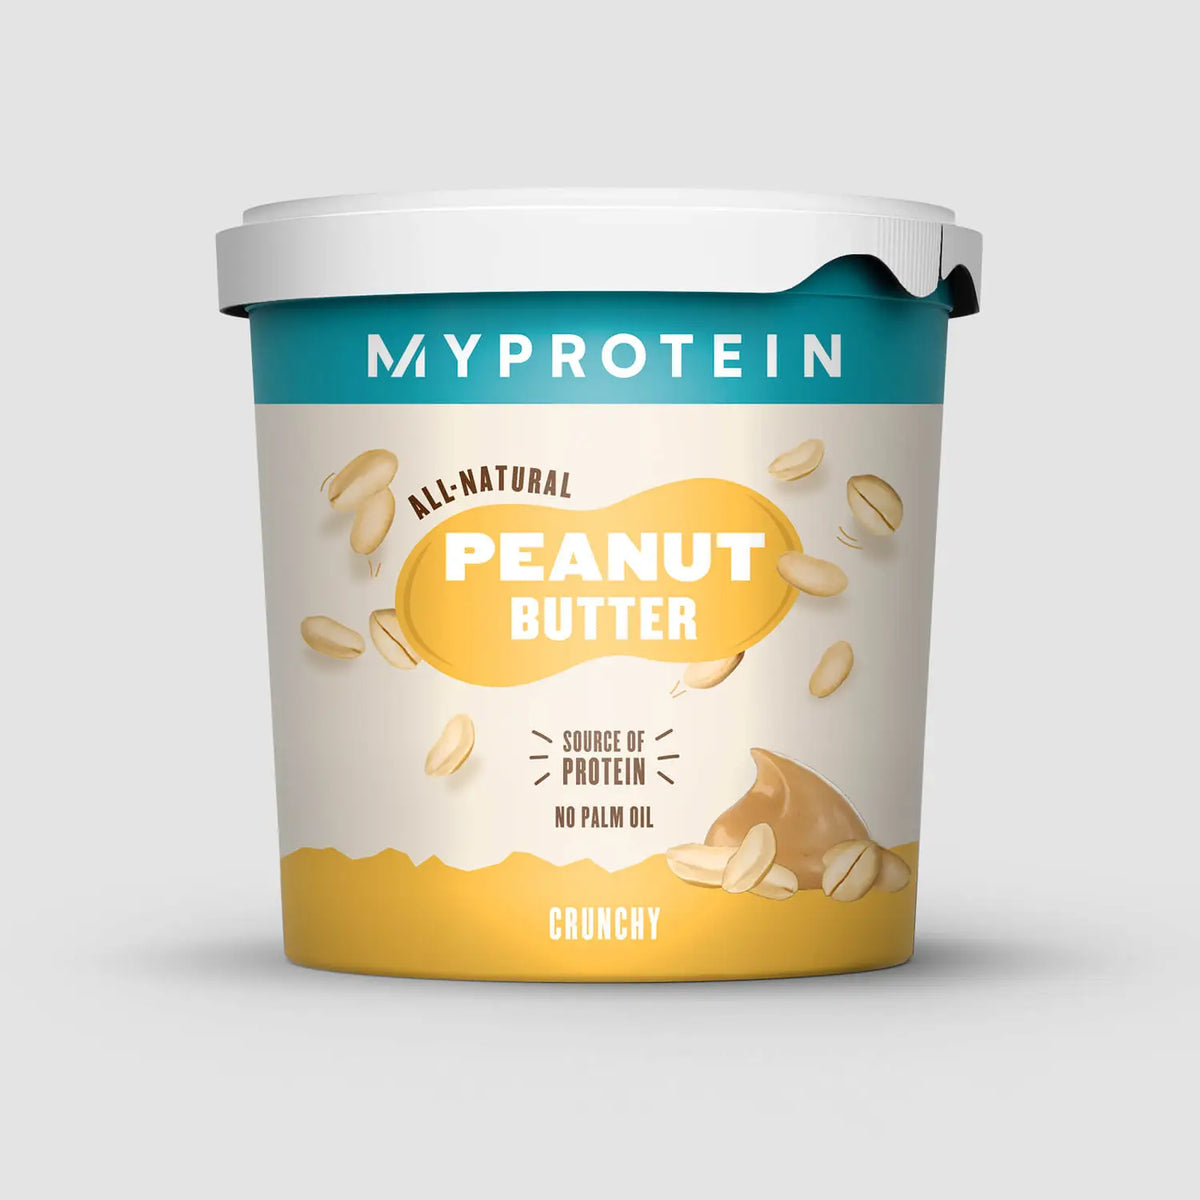 Natural Peanut Butter - Myprotein